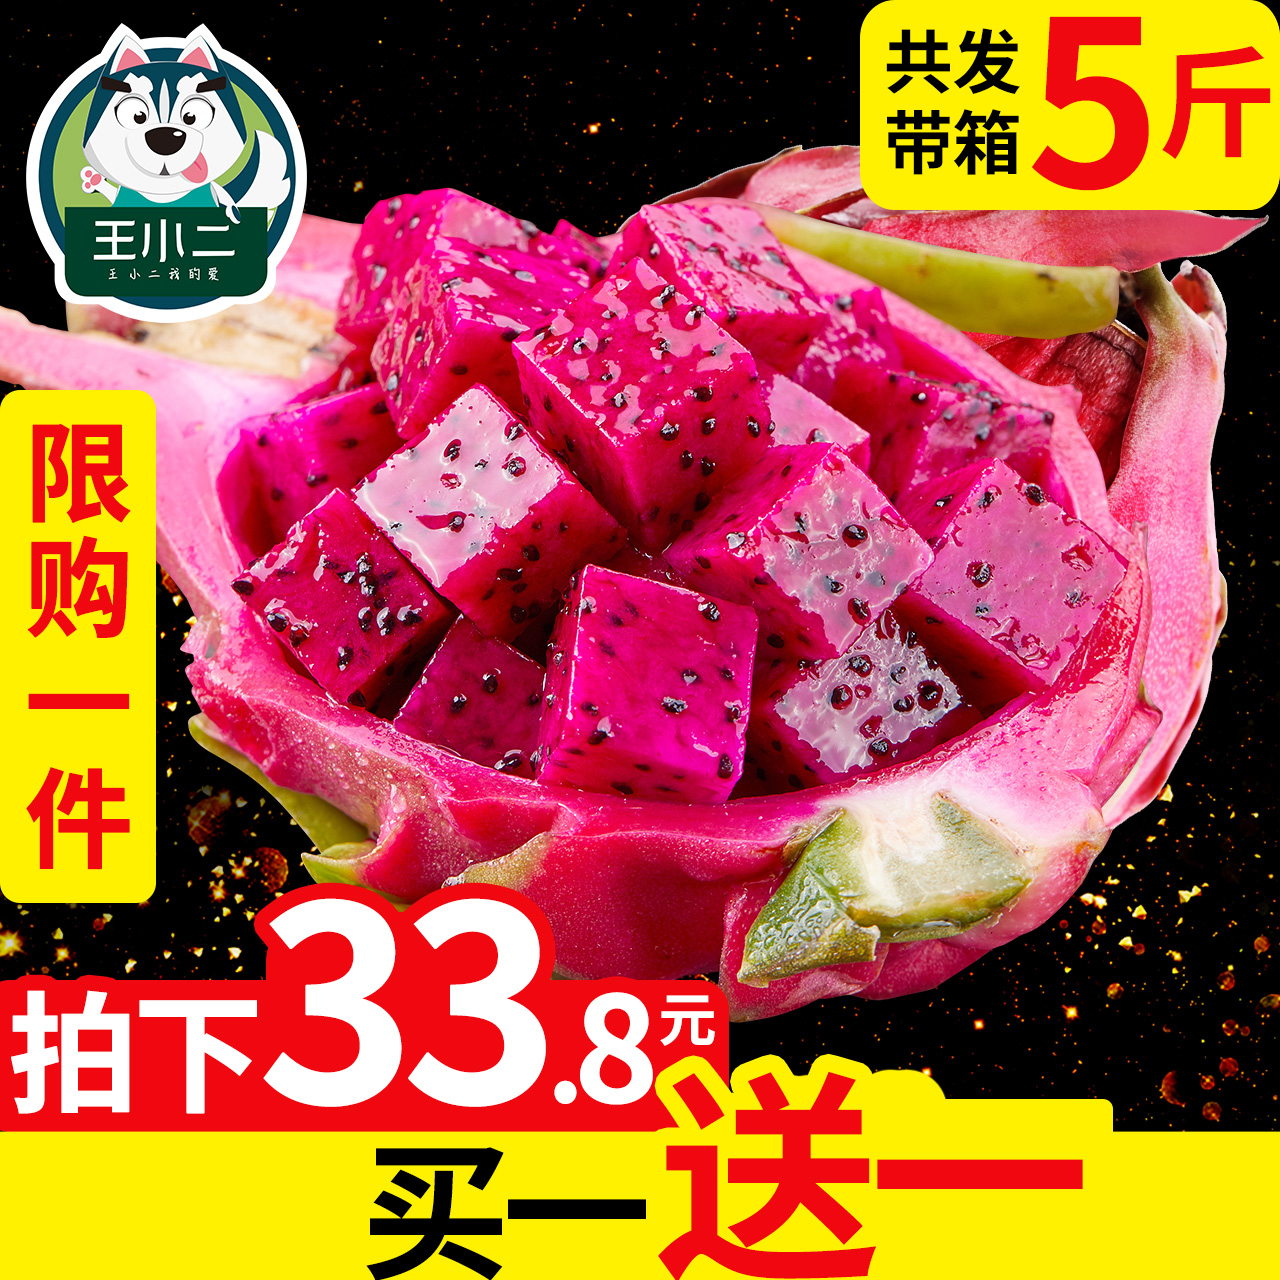 【买一送一】越南进口红心火龙果5斤新鲜水果包邮当季整箱红肉